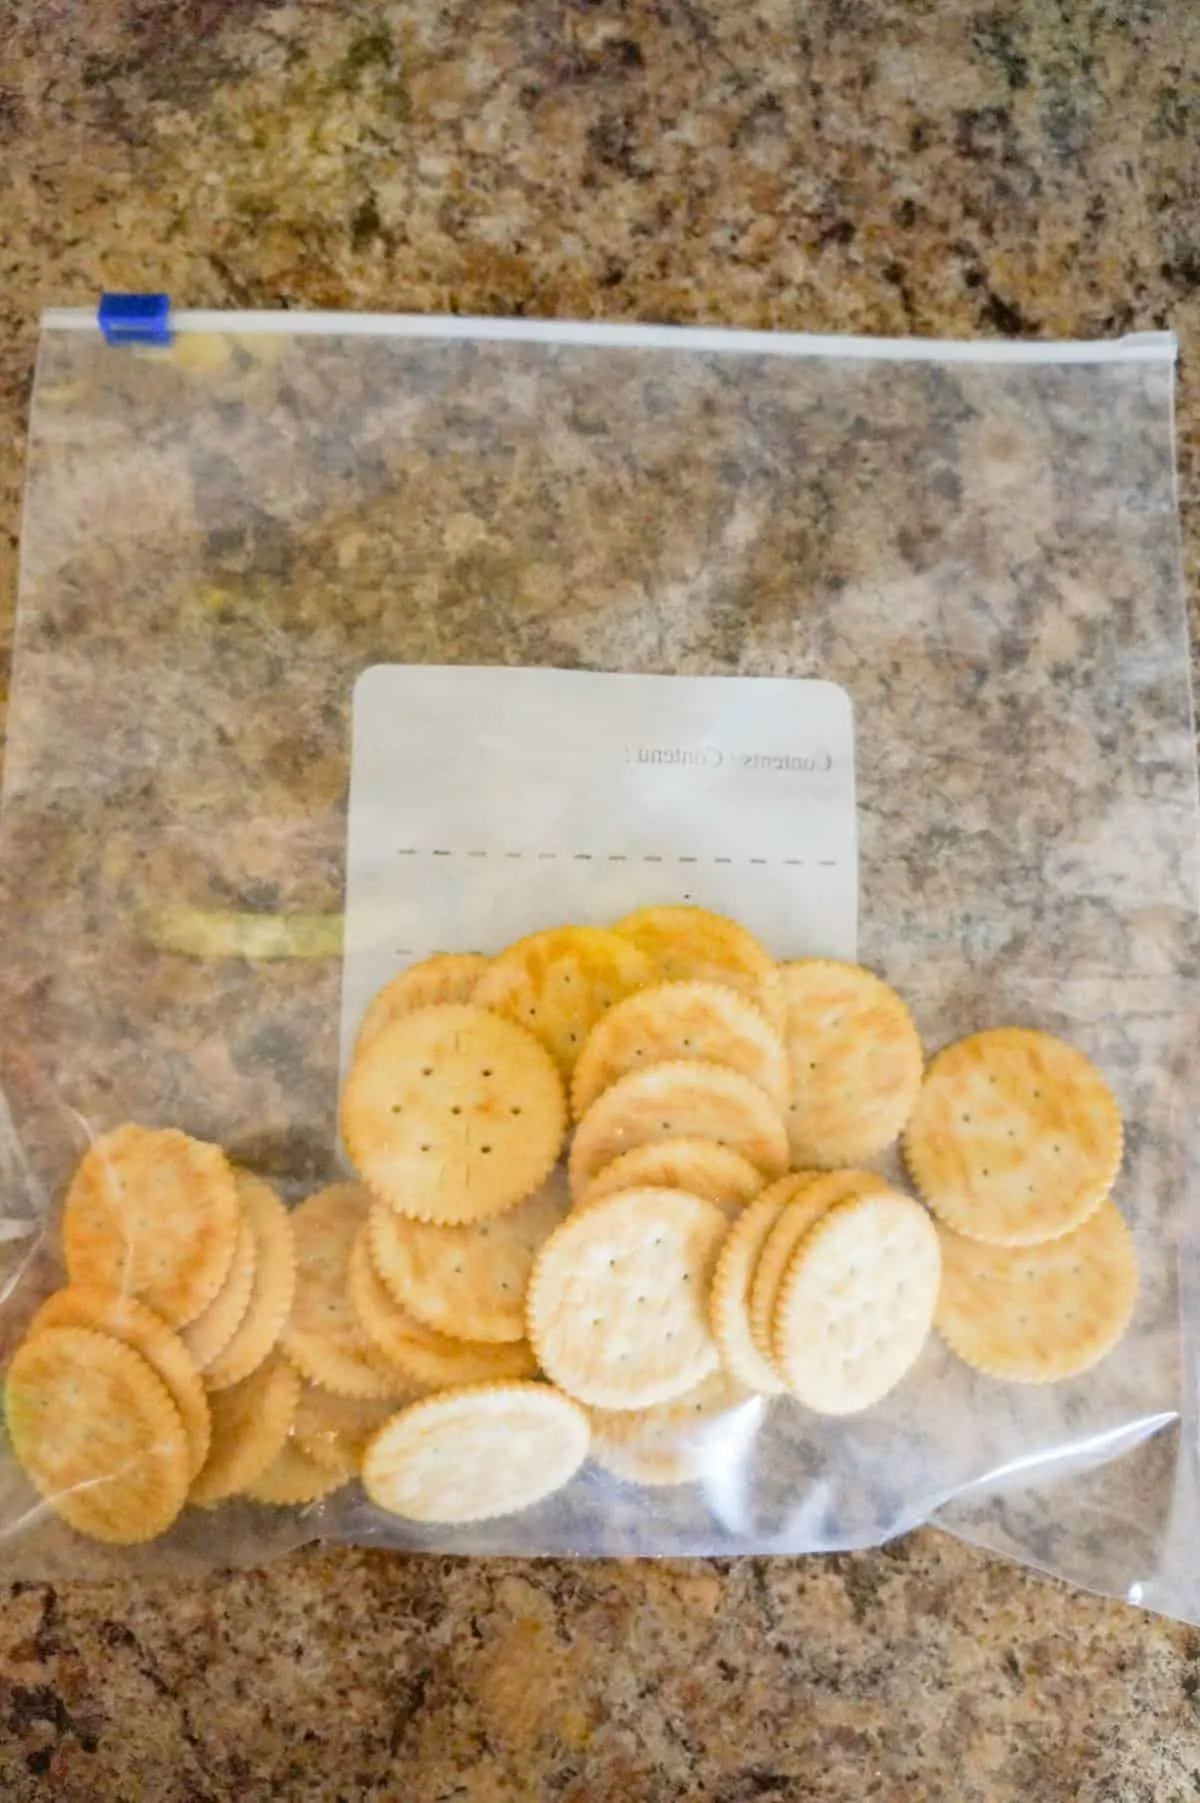 Ritz crackers in a Ziploc bag